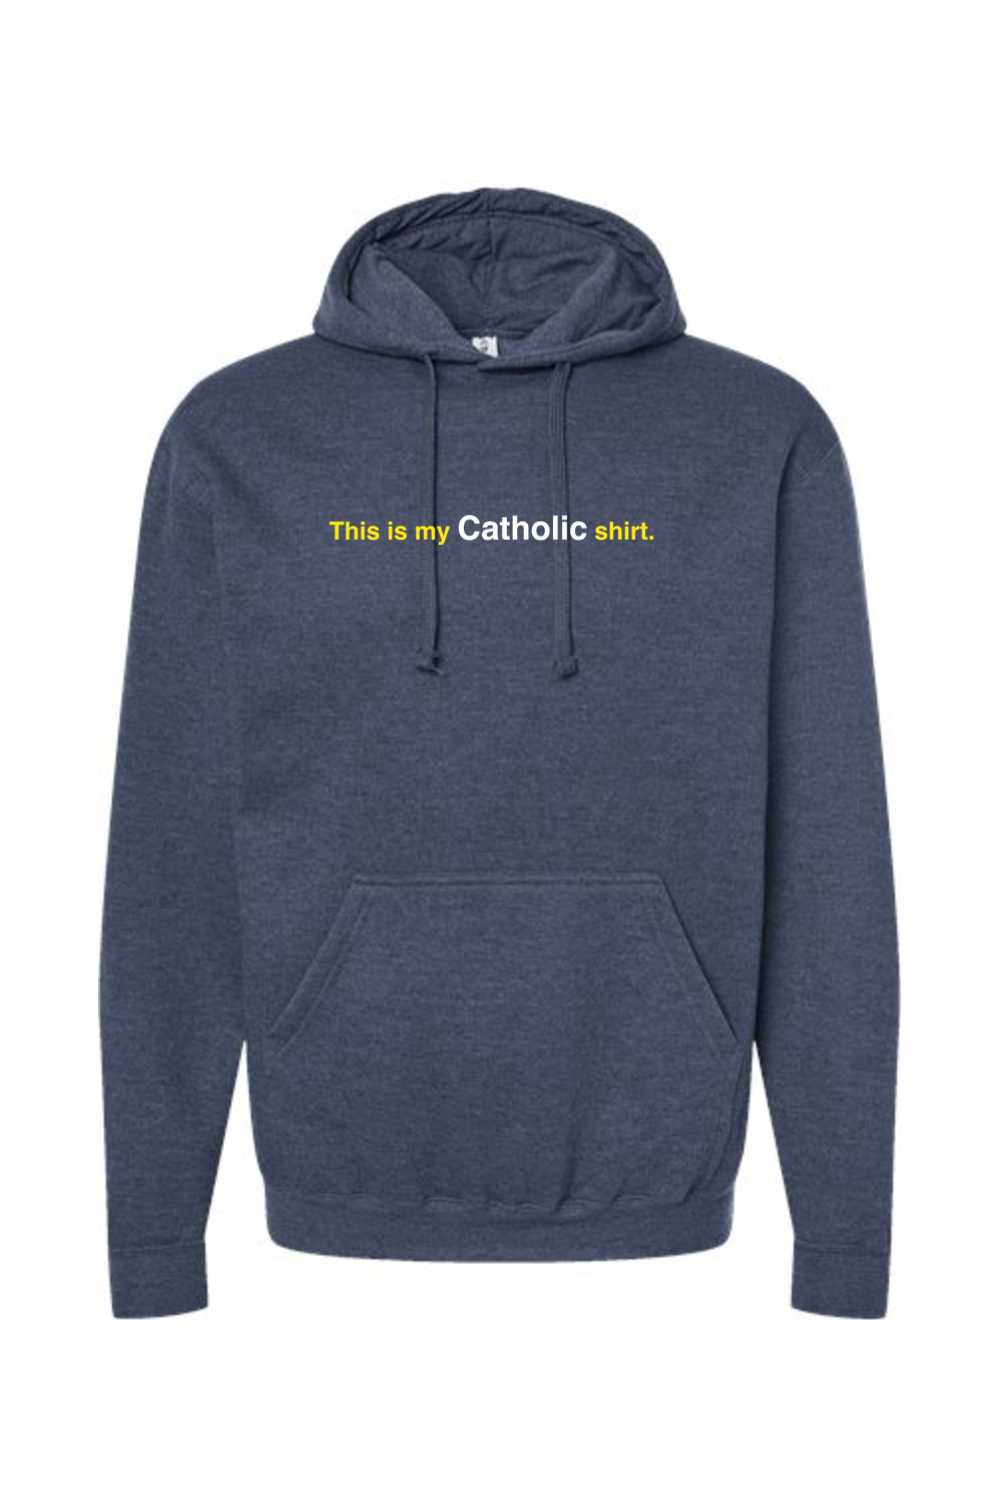 My Catholic Shirt - Hoodie Sweatshirt